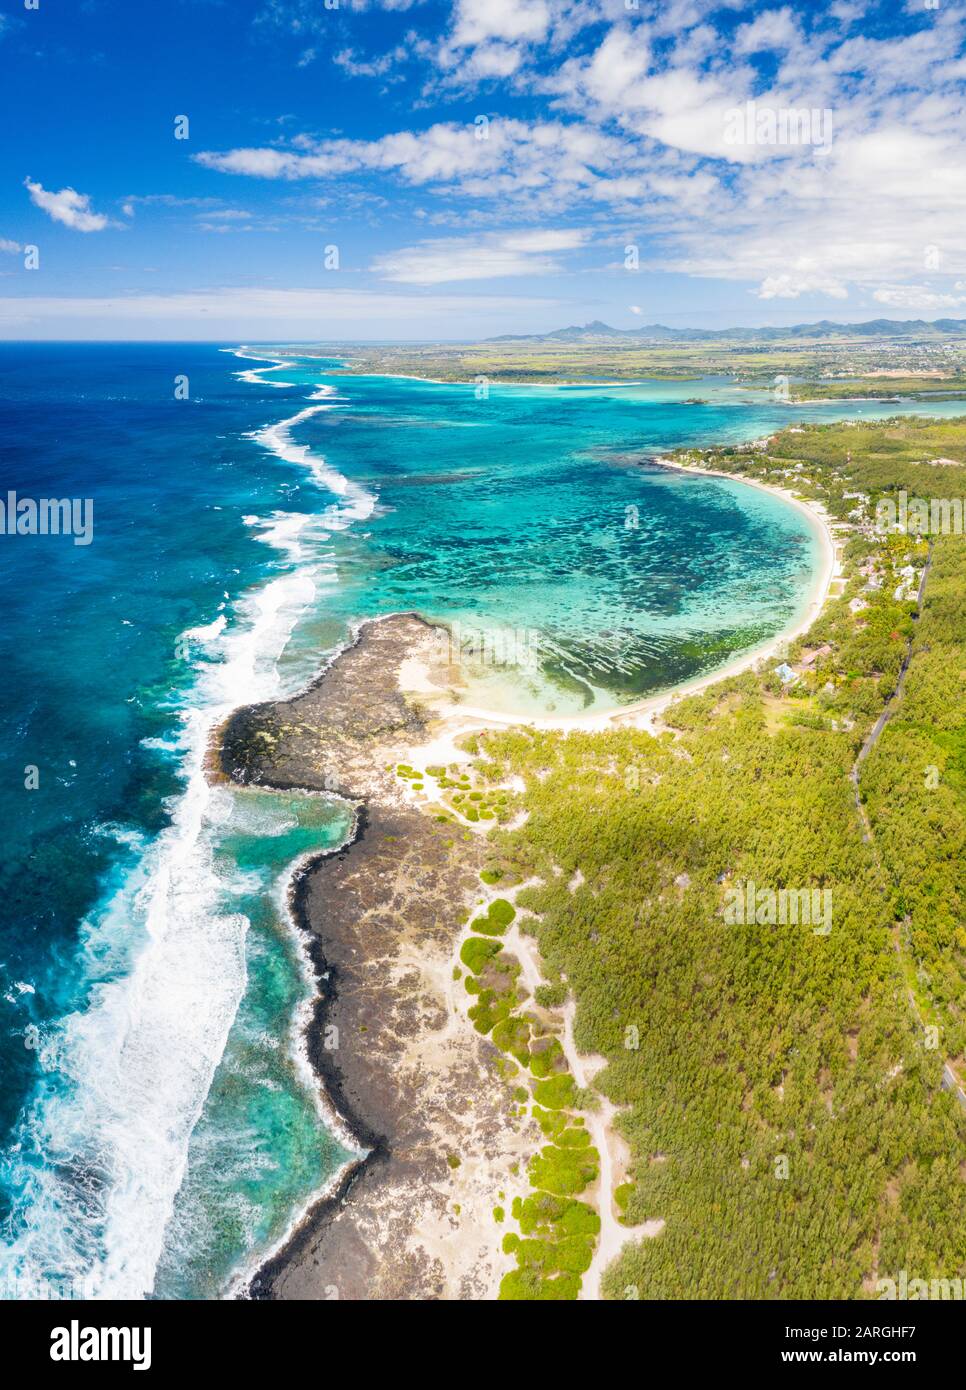 Vue panoramique aérienne de la plage publique tropicale lavée par les vagues de l'océan, poste Lafayette, côte est, Maurice, Océan Indien, Afrique Banque D'Images